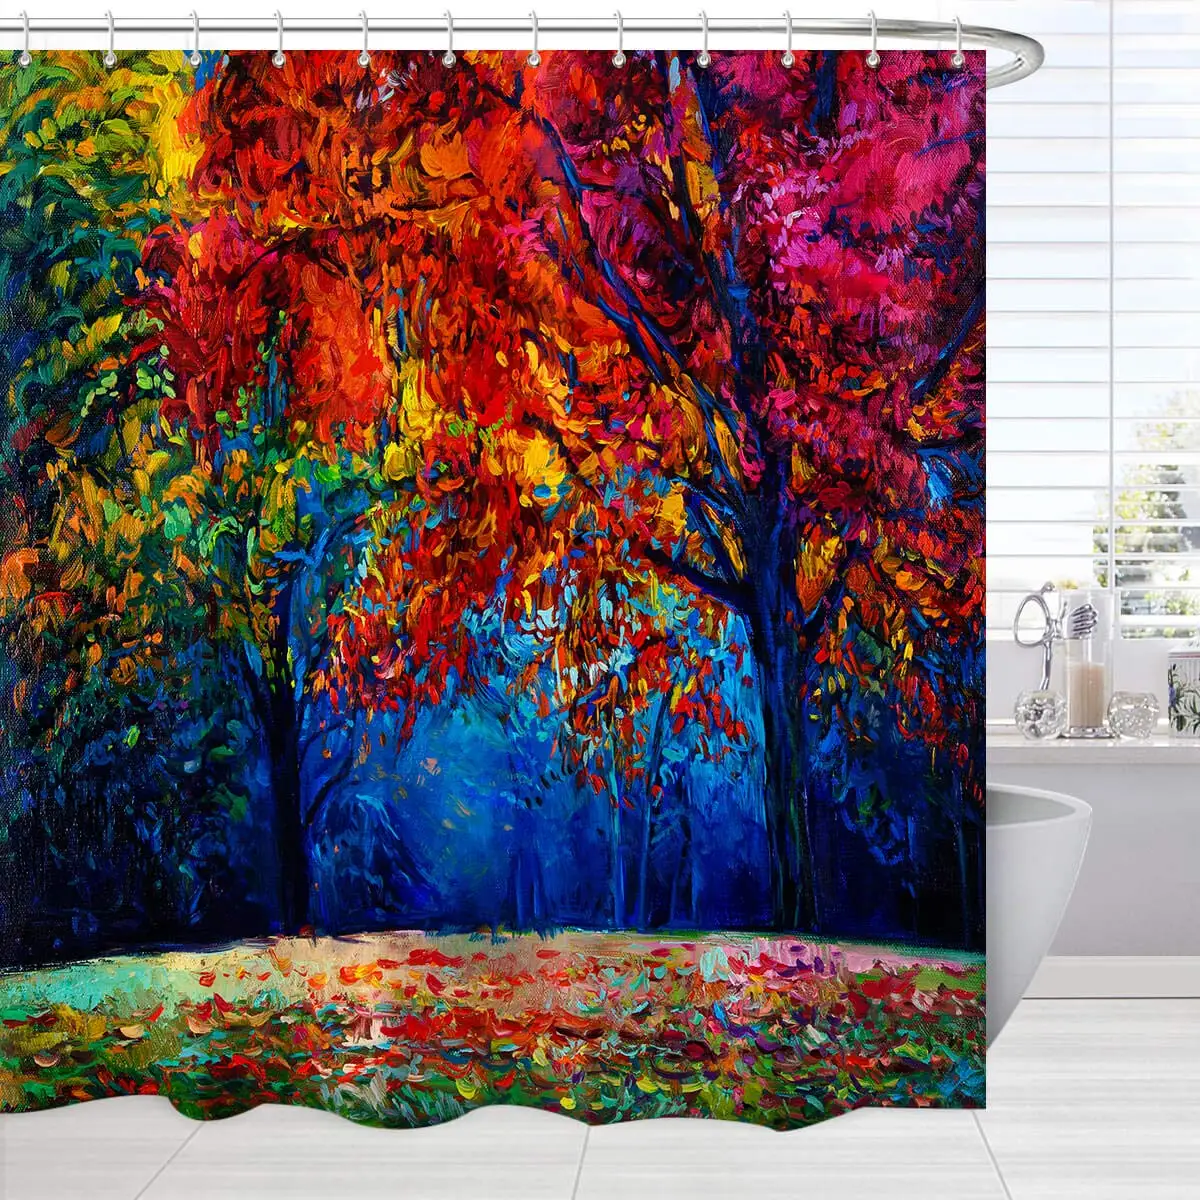 

Осенняя занавеска для душа для ванной, абстрактная Осенняя лесная деревья, художественная картина, занавеска для ванной комнаты, яркие тканевые аксессуары для ванной комнаты